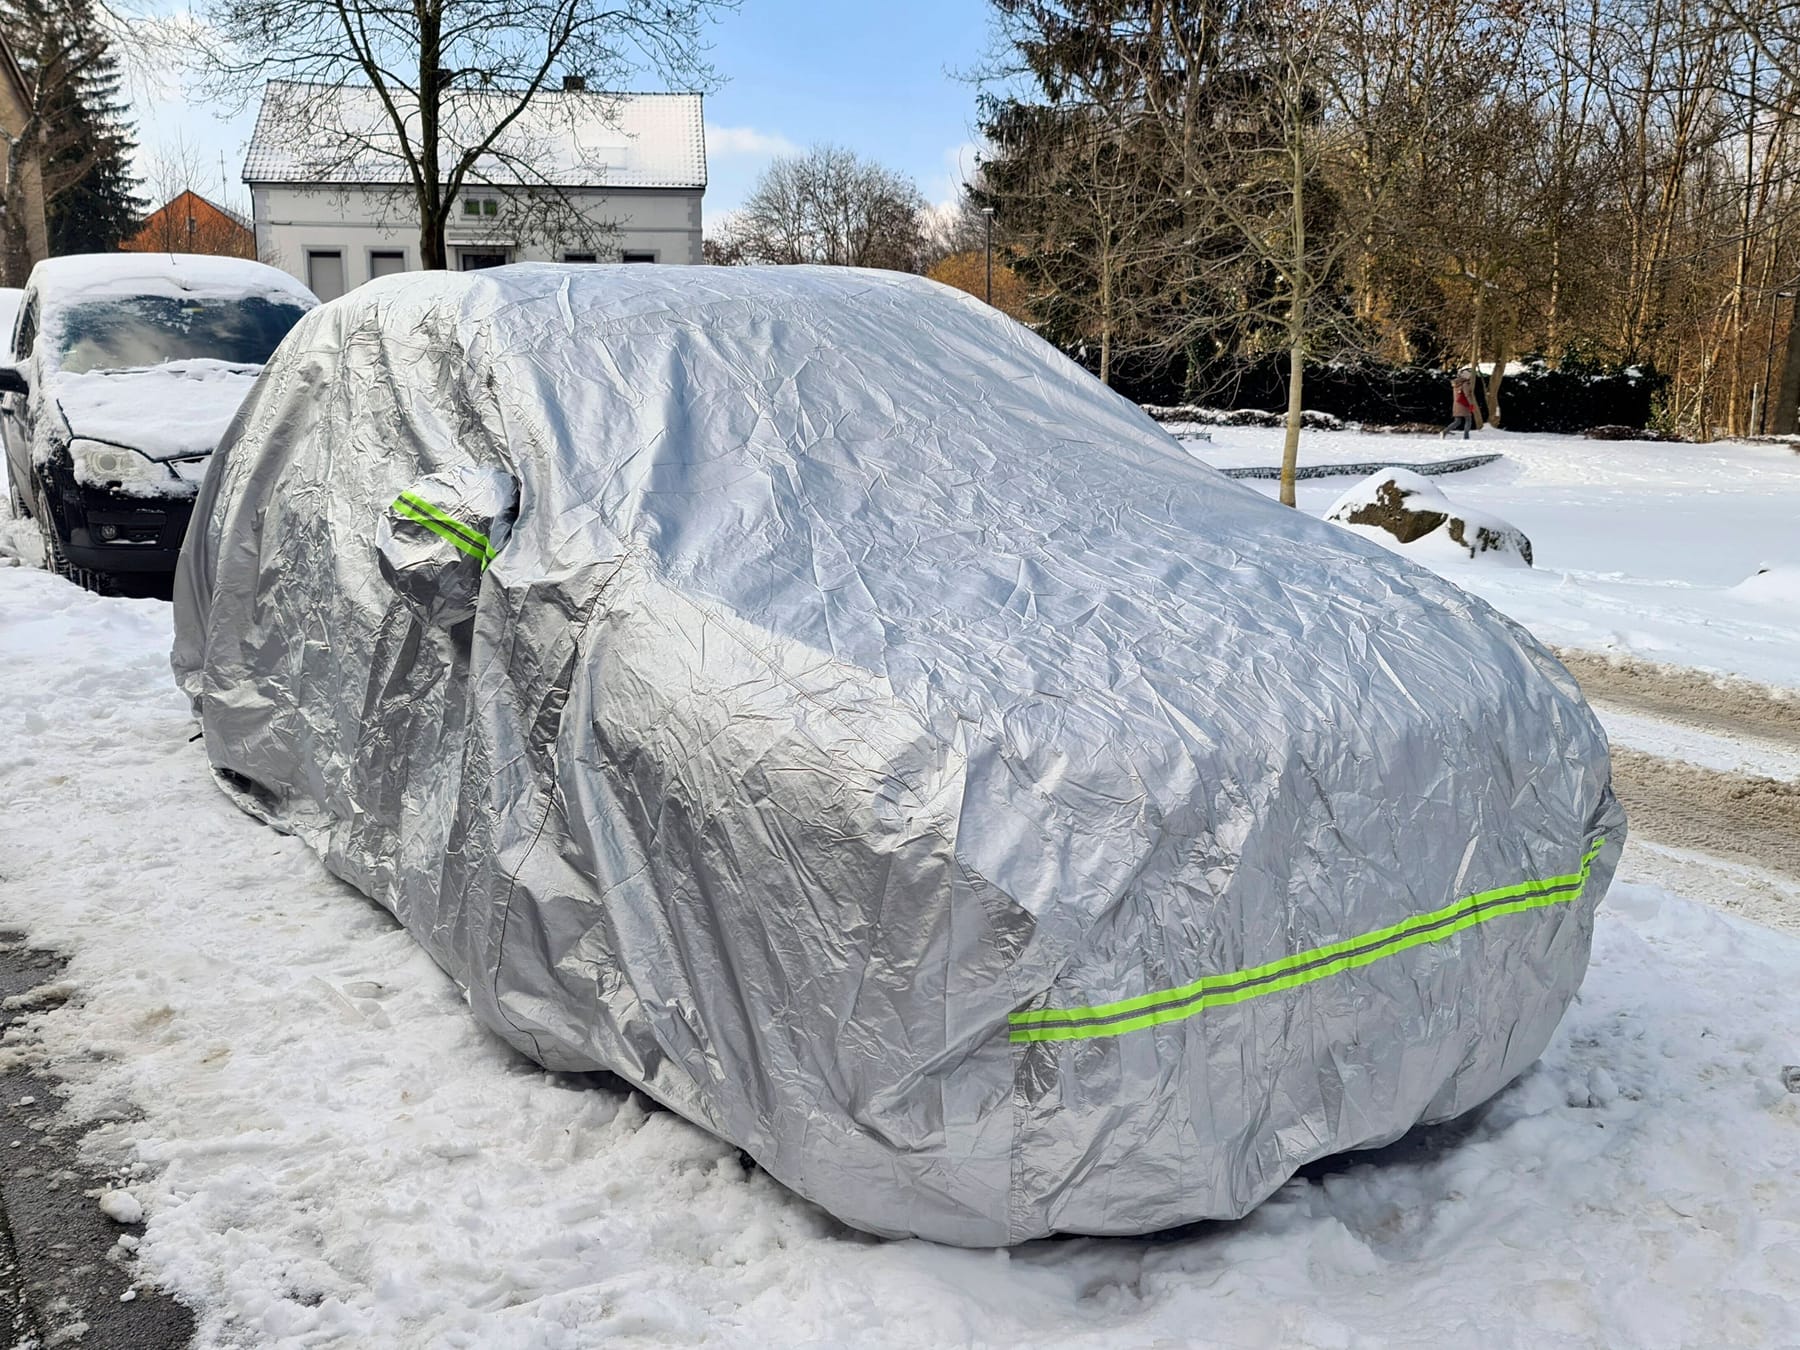 https://images.t-online.de/2023/02/6oBwslVBQmh9/500x2:3000x2250/fit-in/1800x0/auto-unter-schutzplane-am-verschneiten-strassenrand-im-winter-deutschland-car-under-tarpaulin-on-snow-covered-roadside-in-winter-germany-blws639685-car-under-tarpaulin-on-snow-covered-roadside-in-winter-germany-blws639685-copyright-xblickwinkel-fotototox.jpg